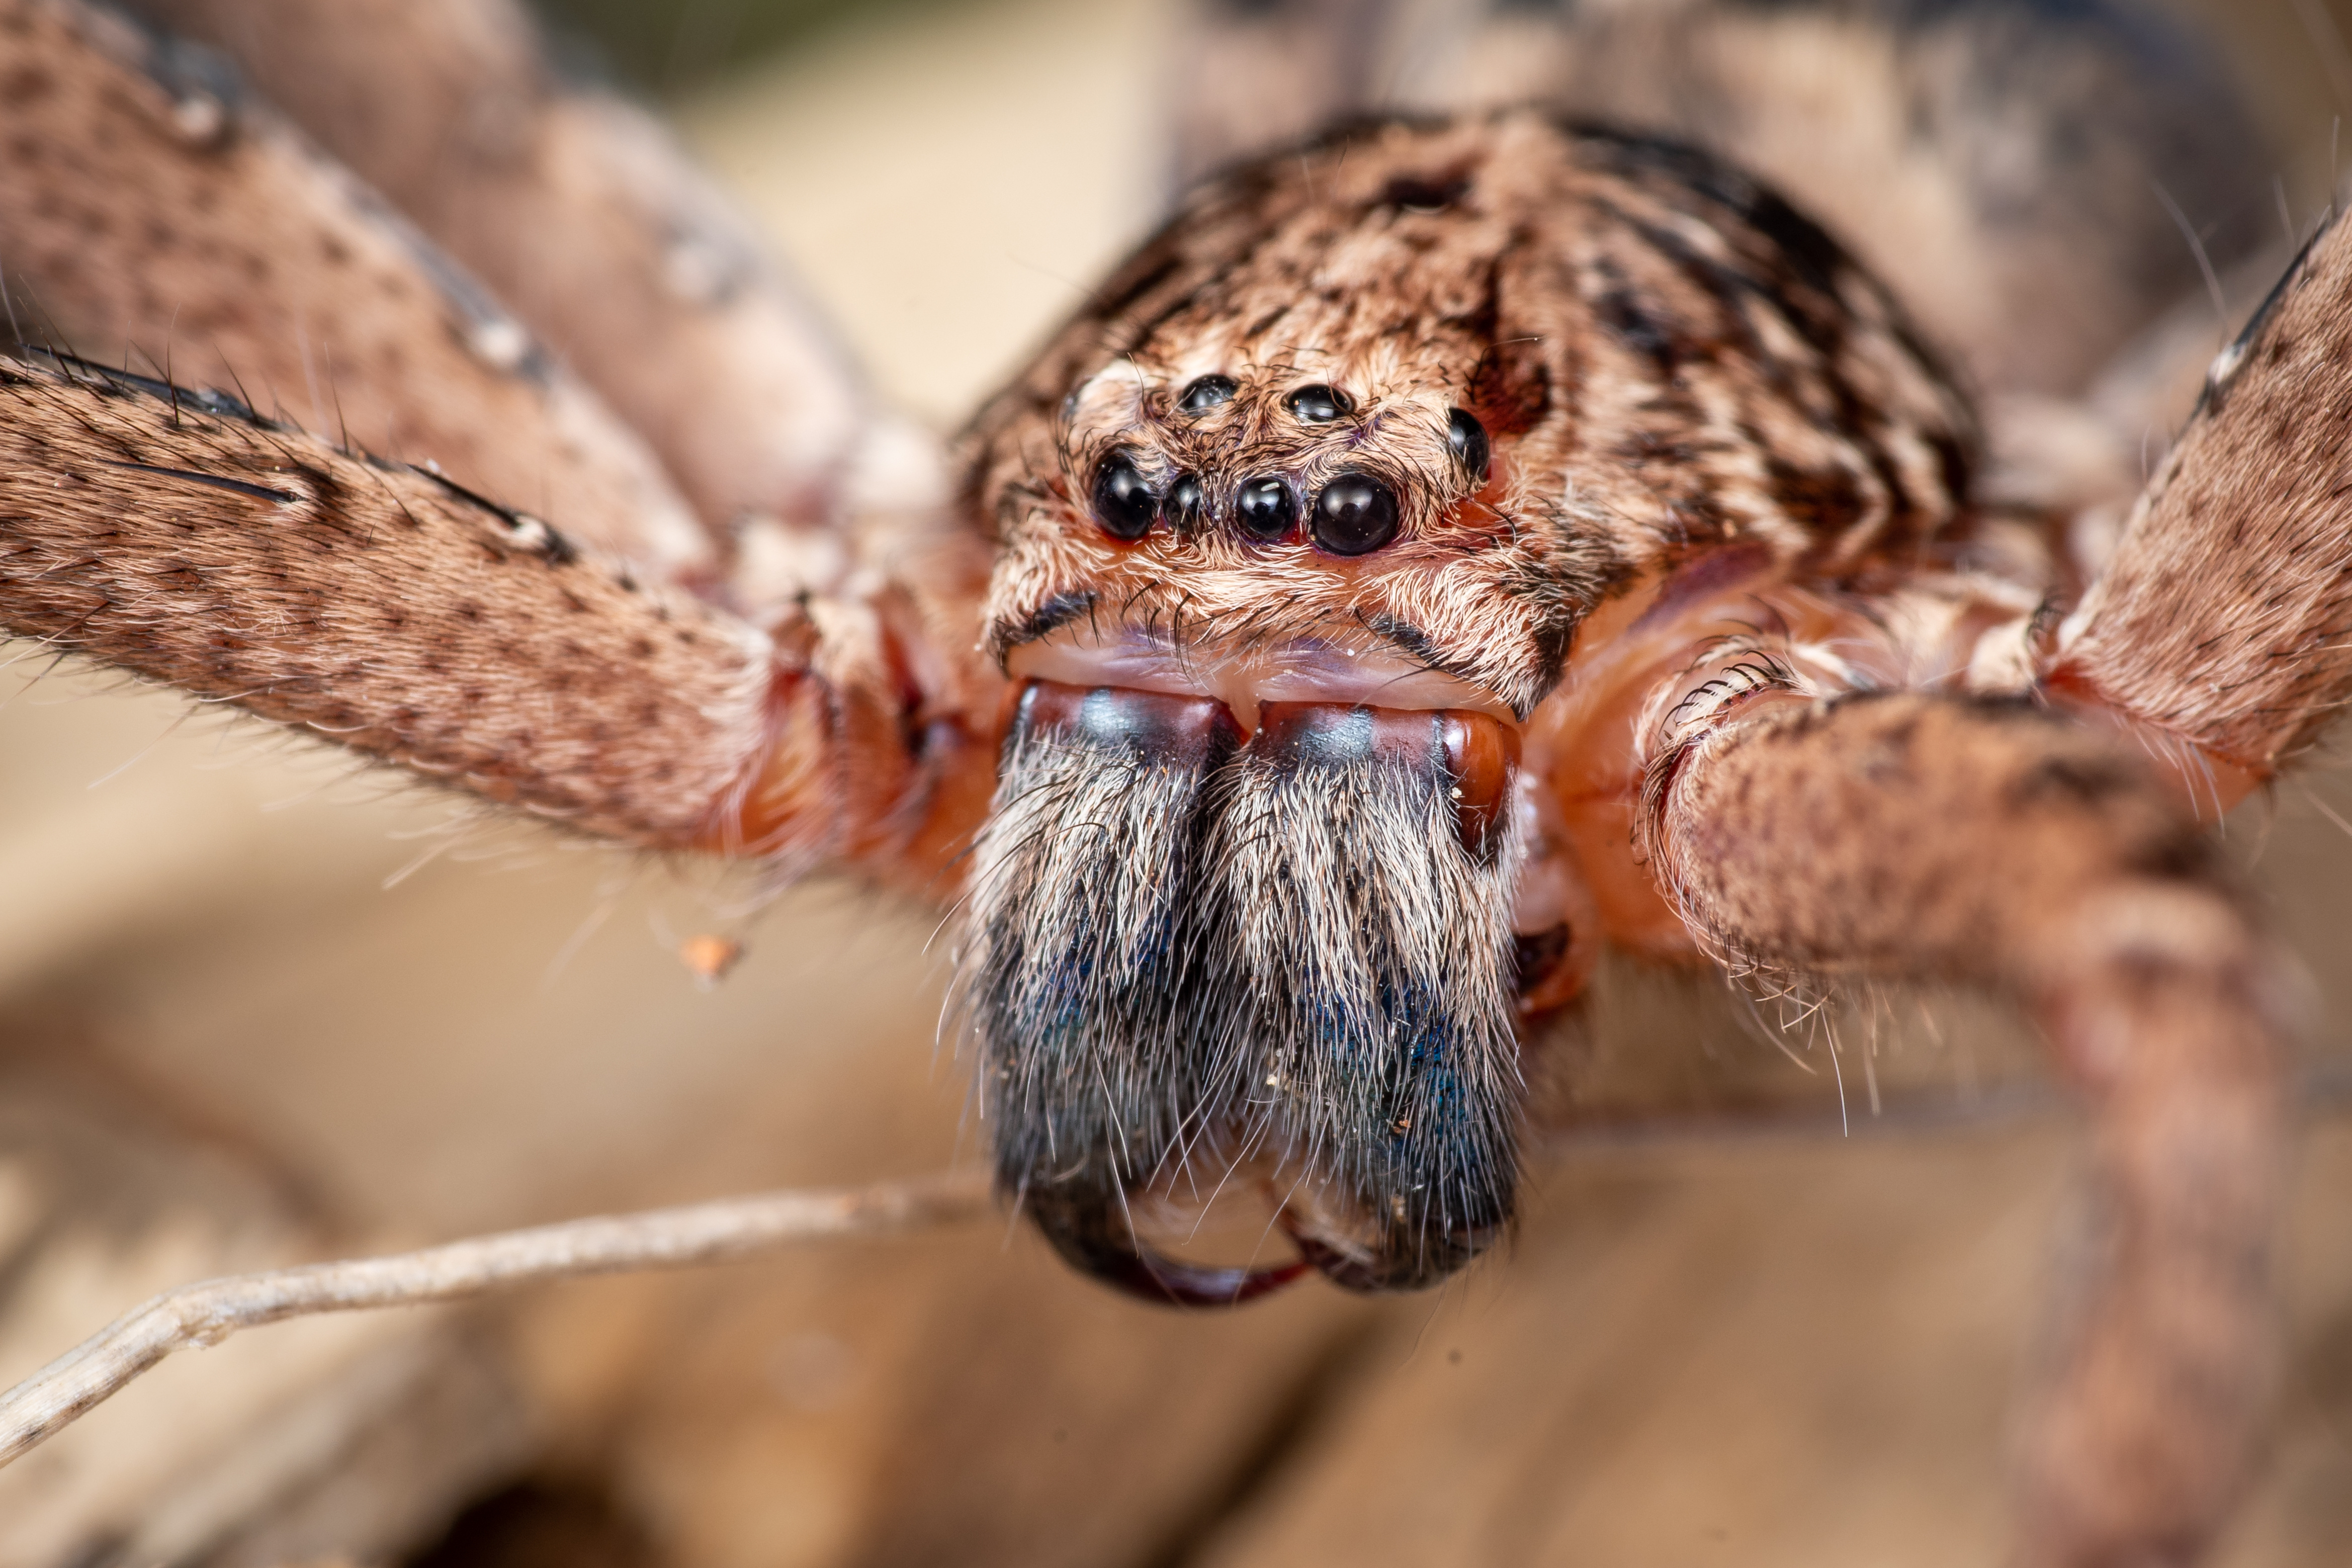 huntsman spiders hunt in packs in australia